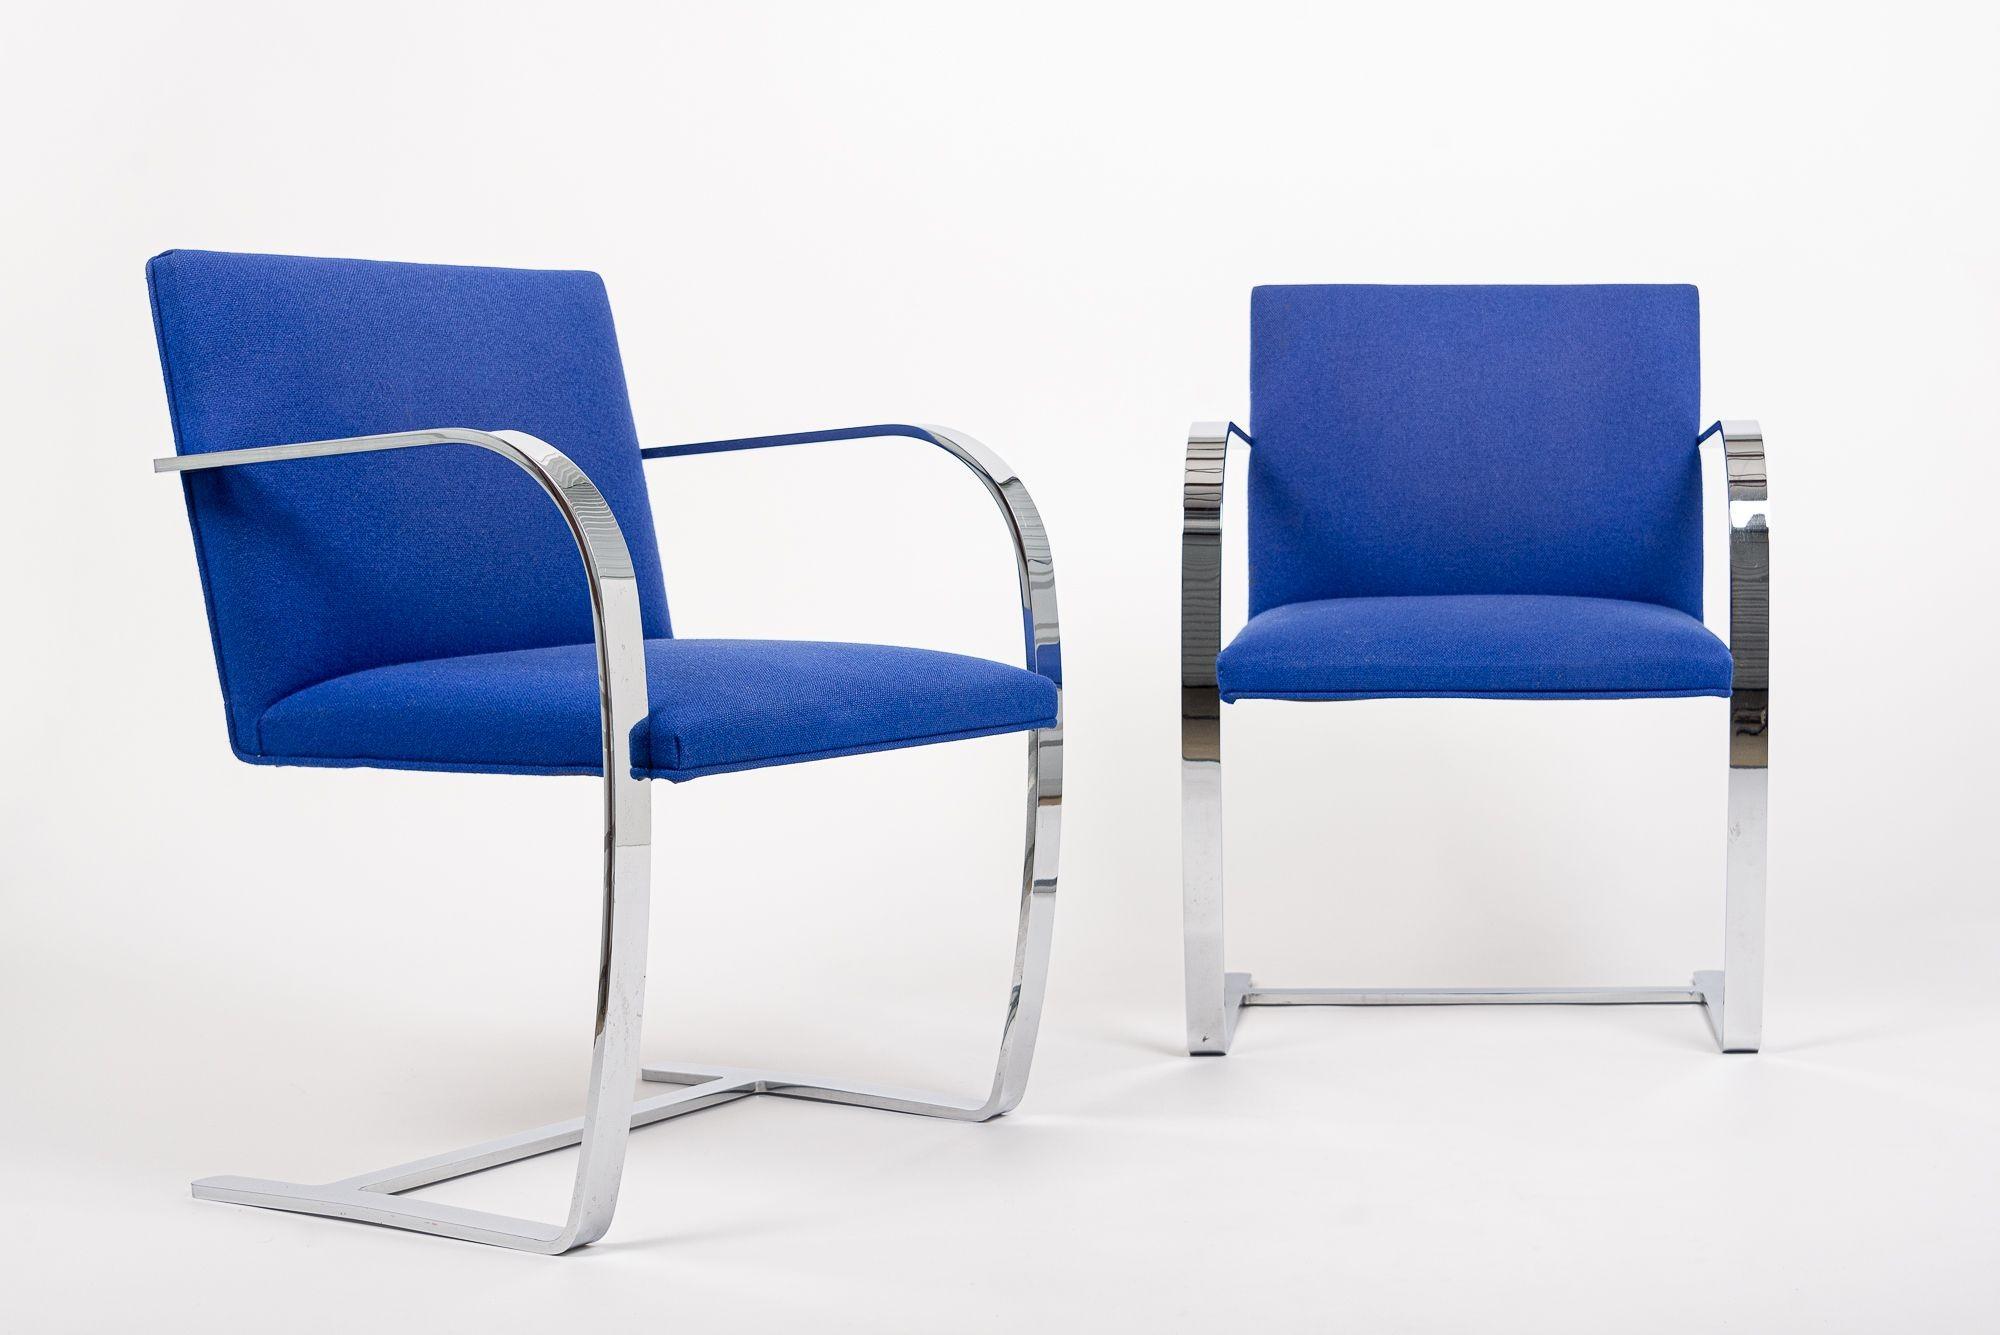 Cette paire de fauteuils Brno de Mies van der Rohe a été fabriquée par Knoll en 2006. Ces chaises emblématiques du Bauhaus ont été conçues par Ludwig Mies van der Rohe en 1930 pour la résidence Tugendhat à Brno, en Tchécoslovaquie. Avec ses lignes